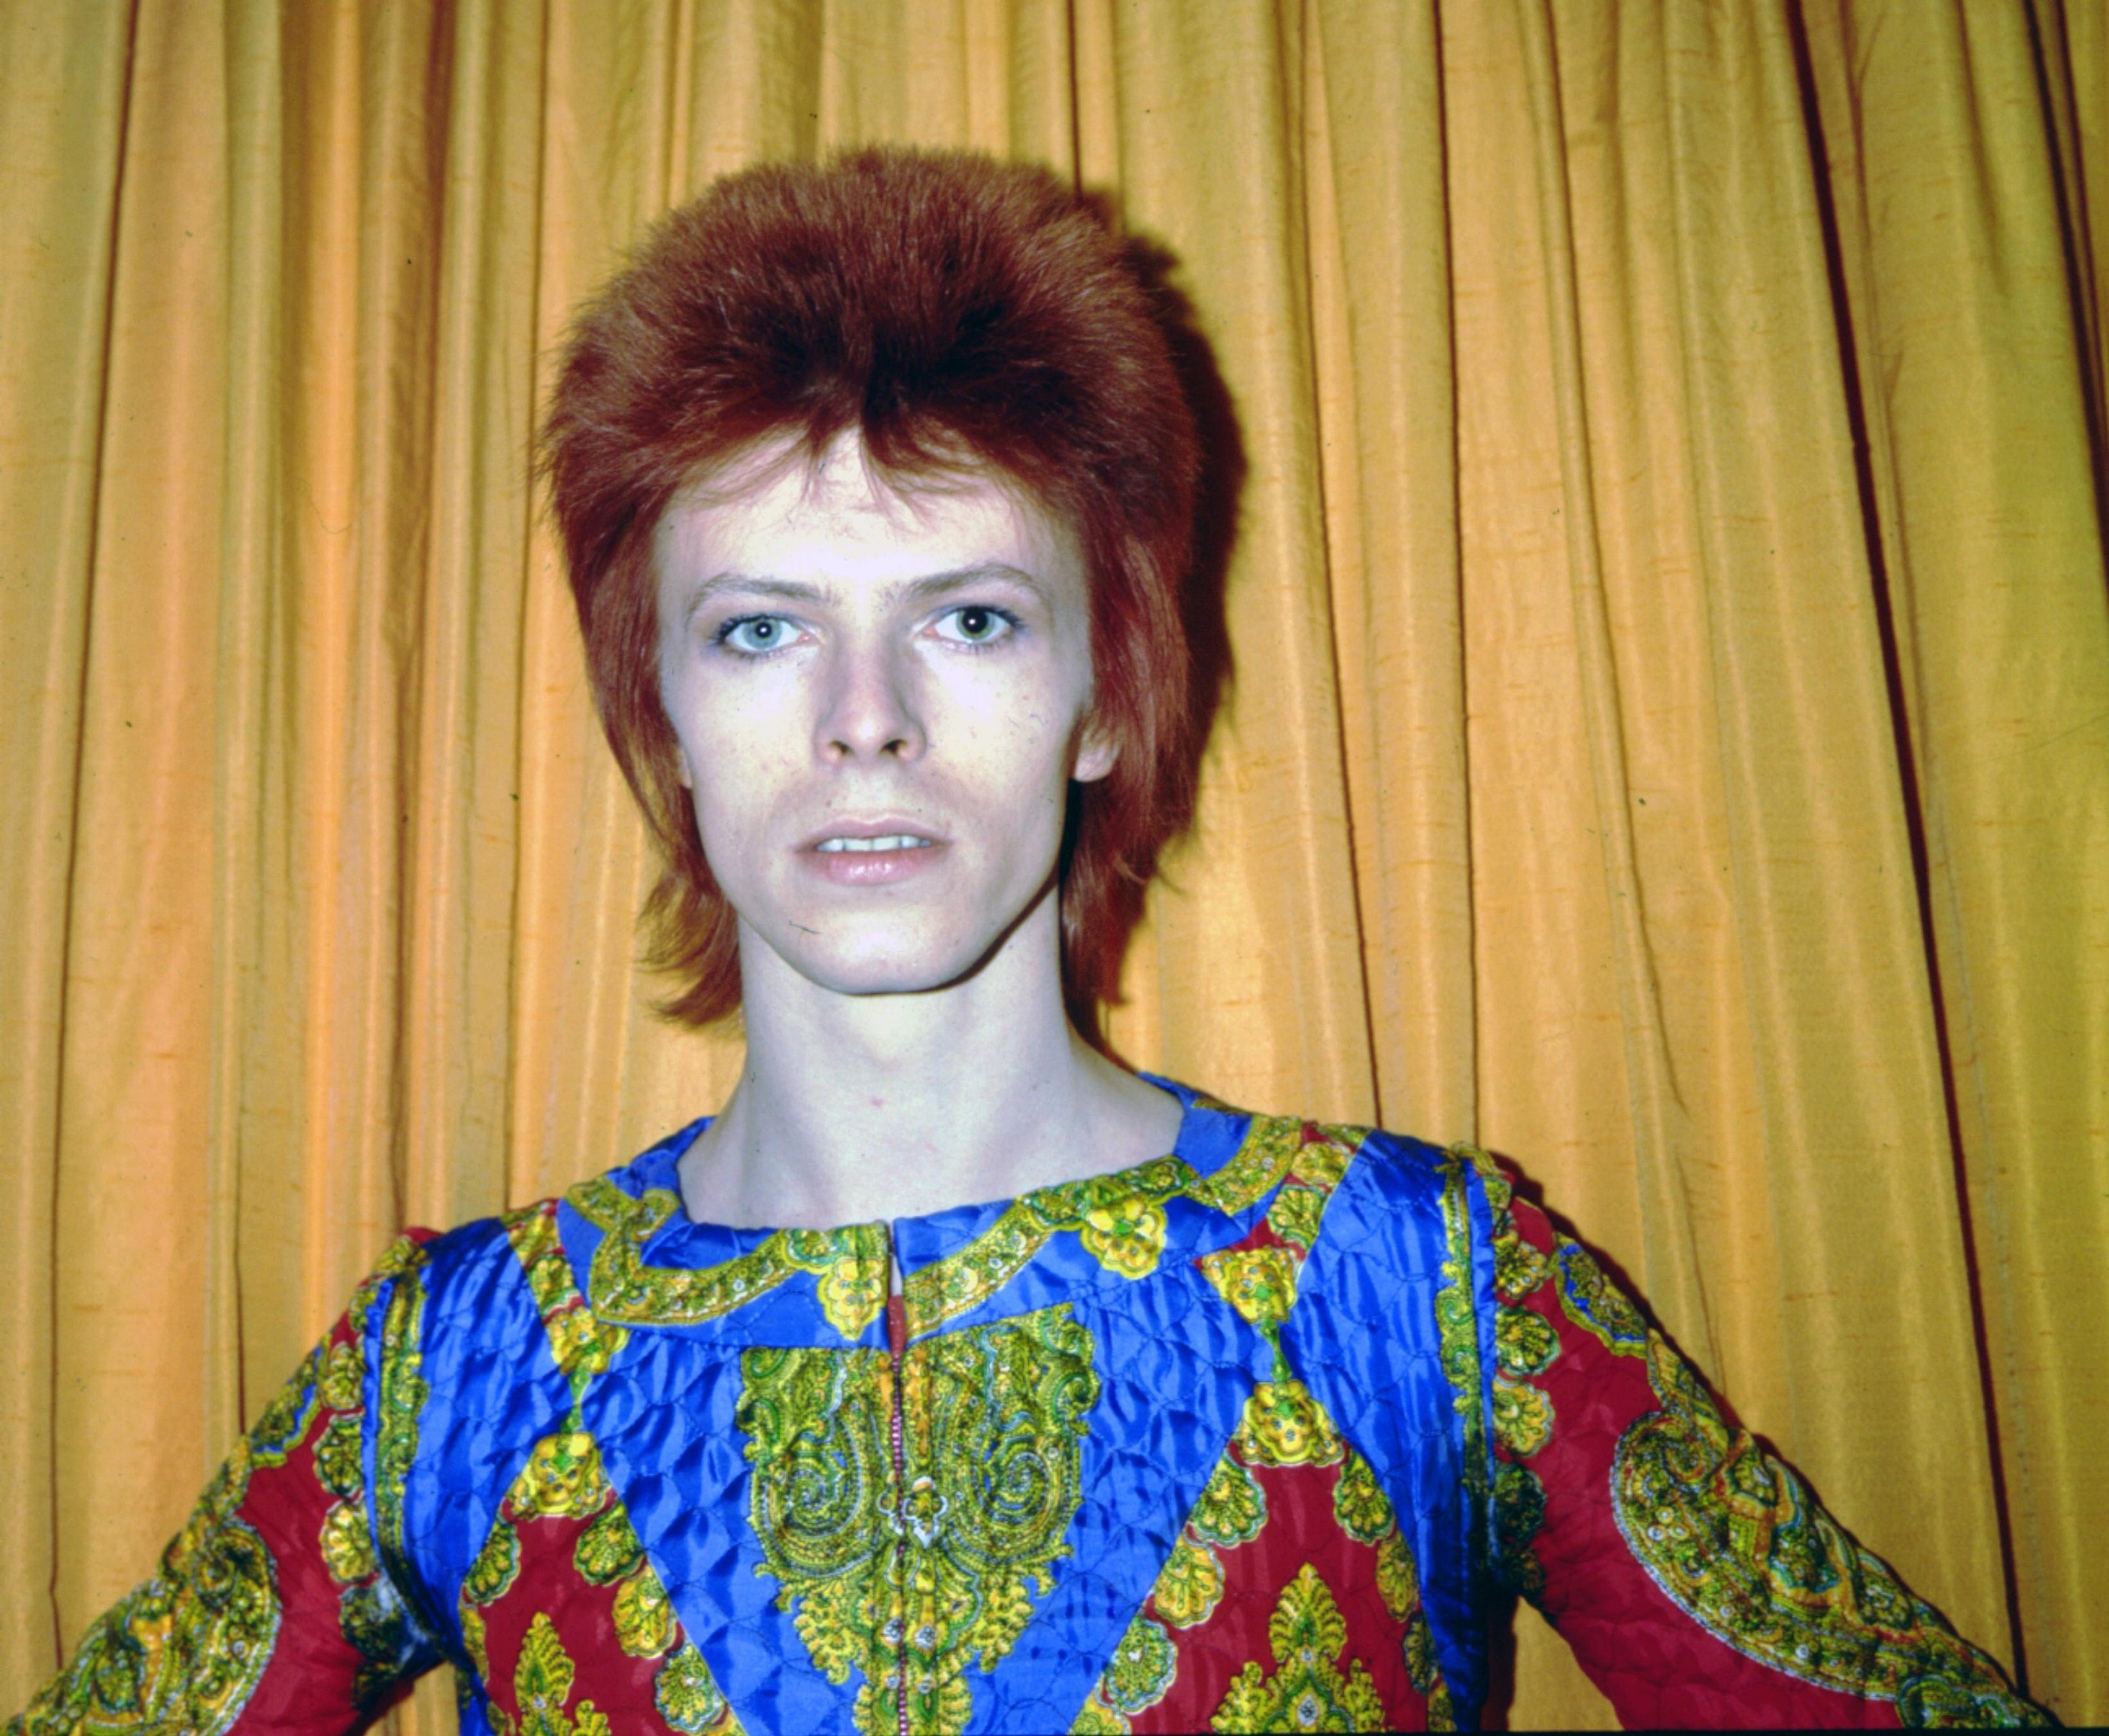 David Bowie dressed as Ziggy Stardust